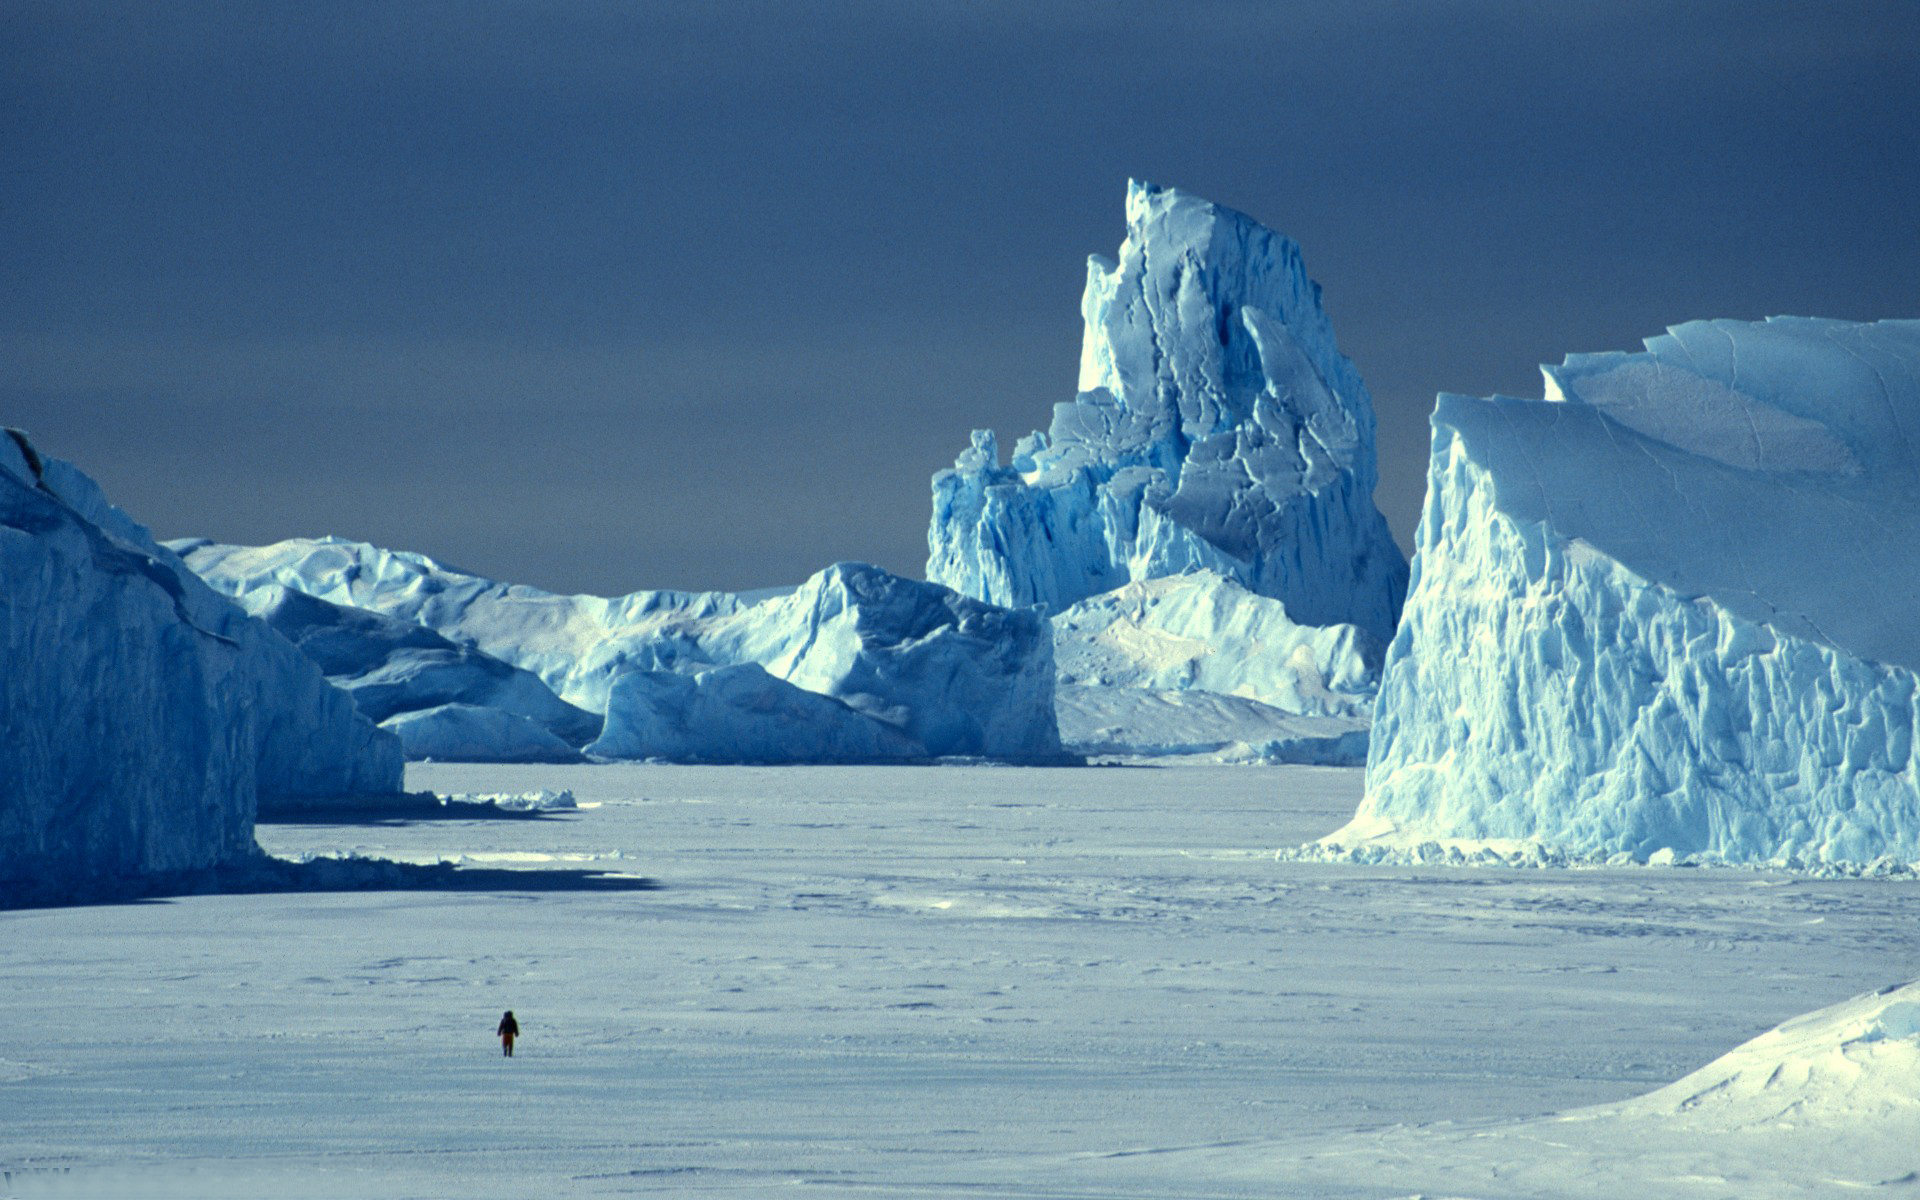 Arctic pole. Арктика Антарктика Антарктида. Зона арктических пустынь в Антарктиде. Антарктида и Северный полюс. Гренландия ледник Антарктида Арктика Гренландия.